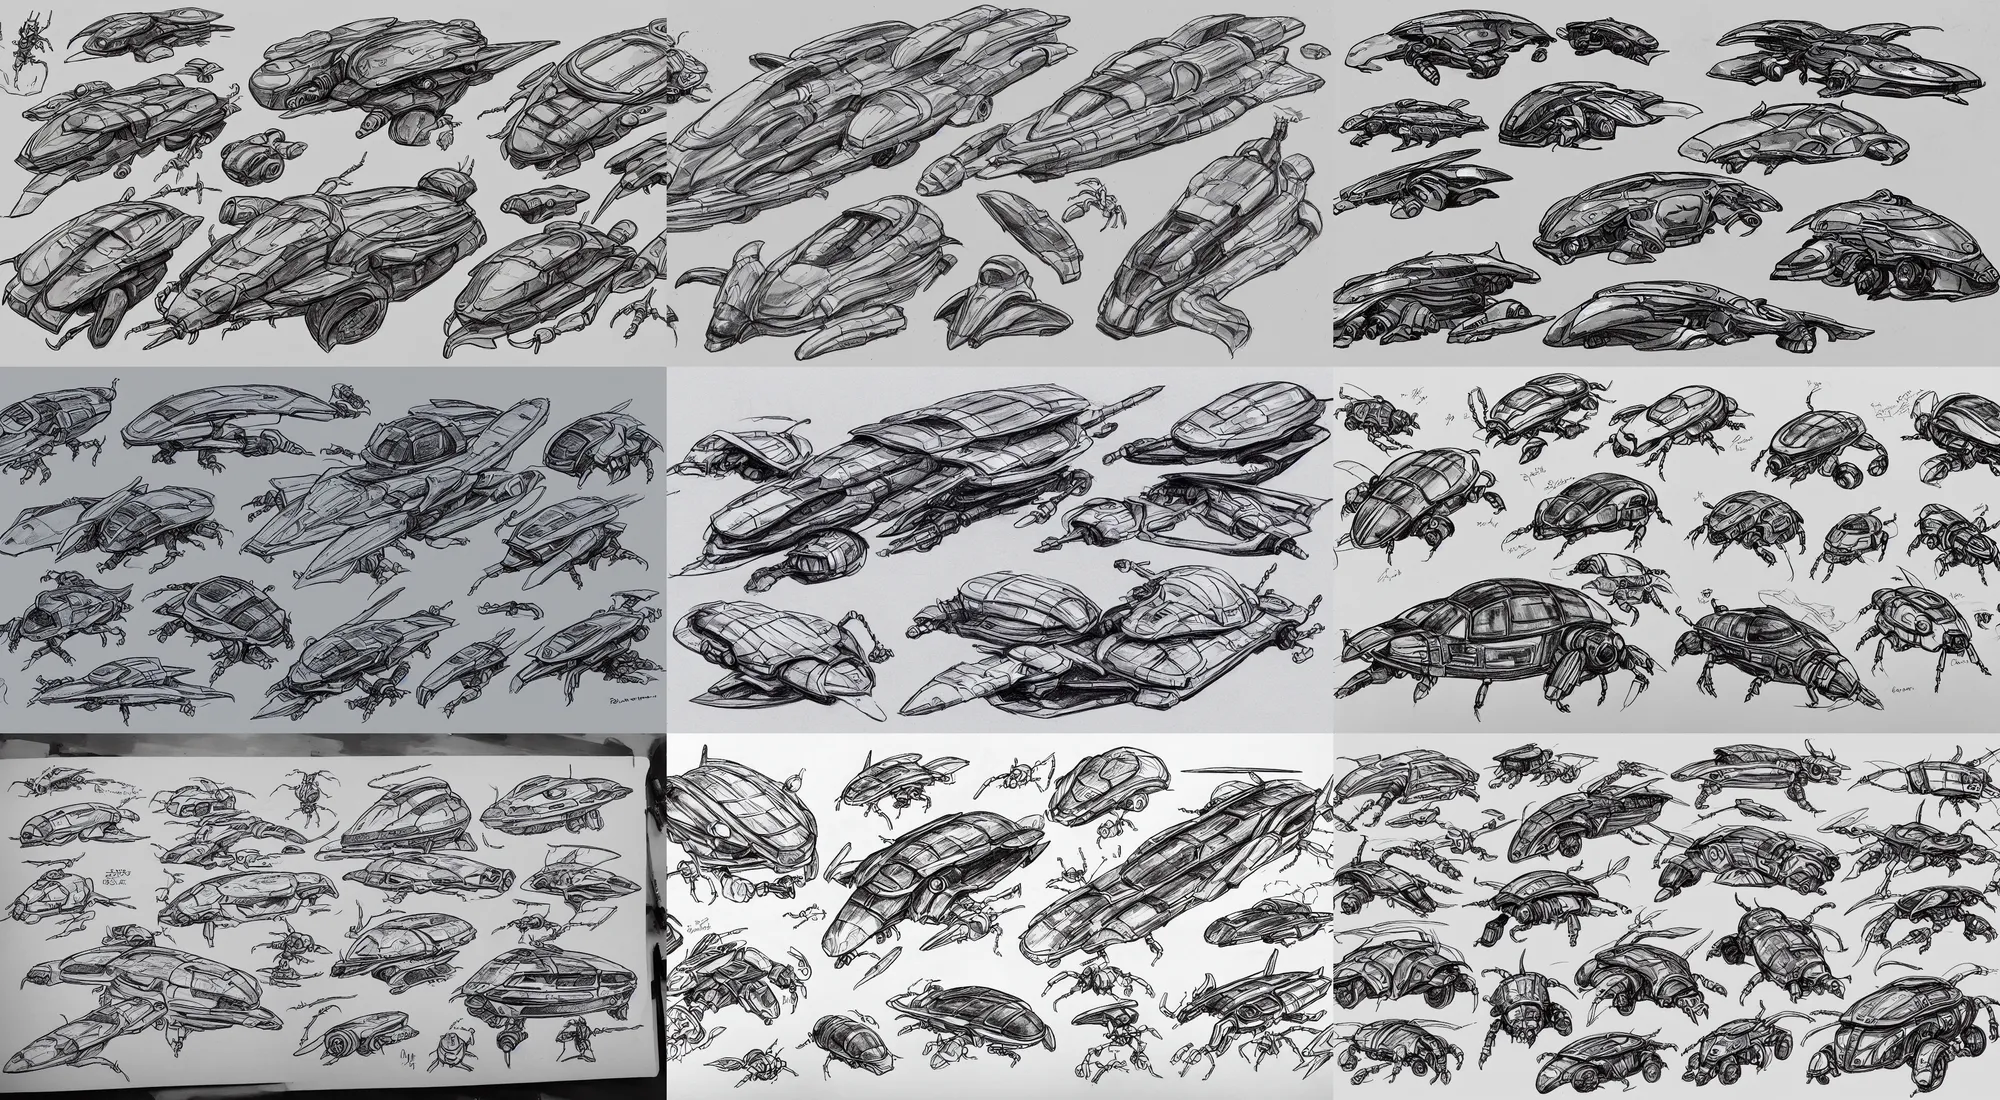 Prompt: beetle spaceship sketches